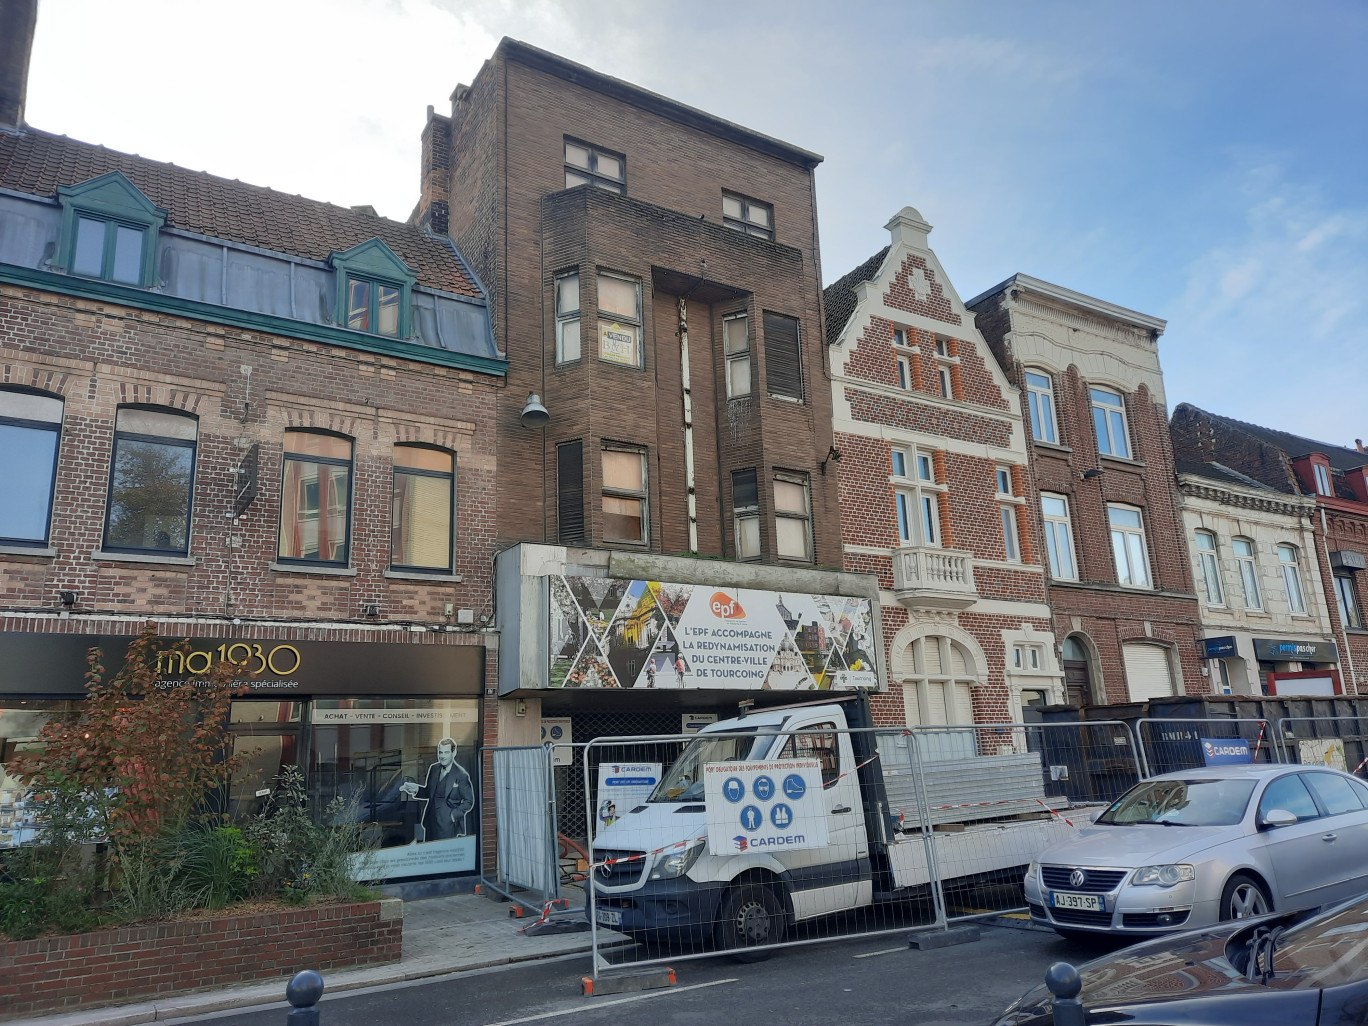 L’ancien cinéma les Arcades de Tourcoing va disparaître pour laisser place à un nouvelle ensemble comprenant des logements et des commerces. (© Aletheia Press / L.Péron)